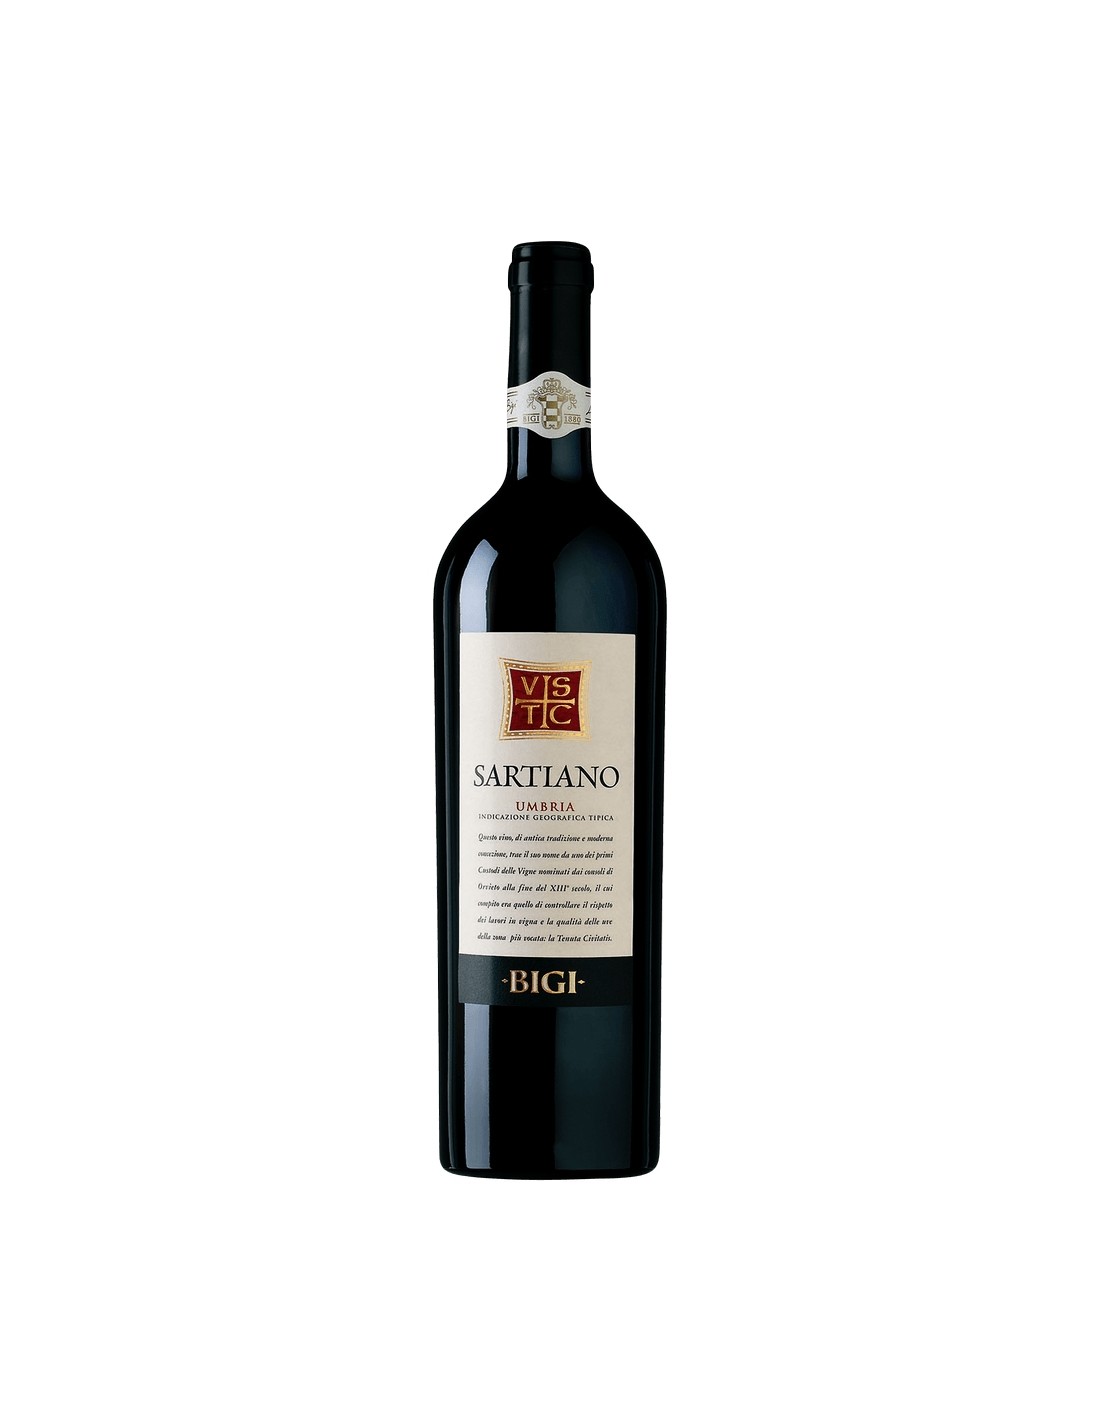 Vin rosu, Bigi Sartiano Umbria, 13.5% alc., 0.75L, Italia